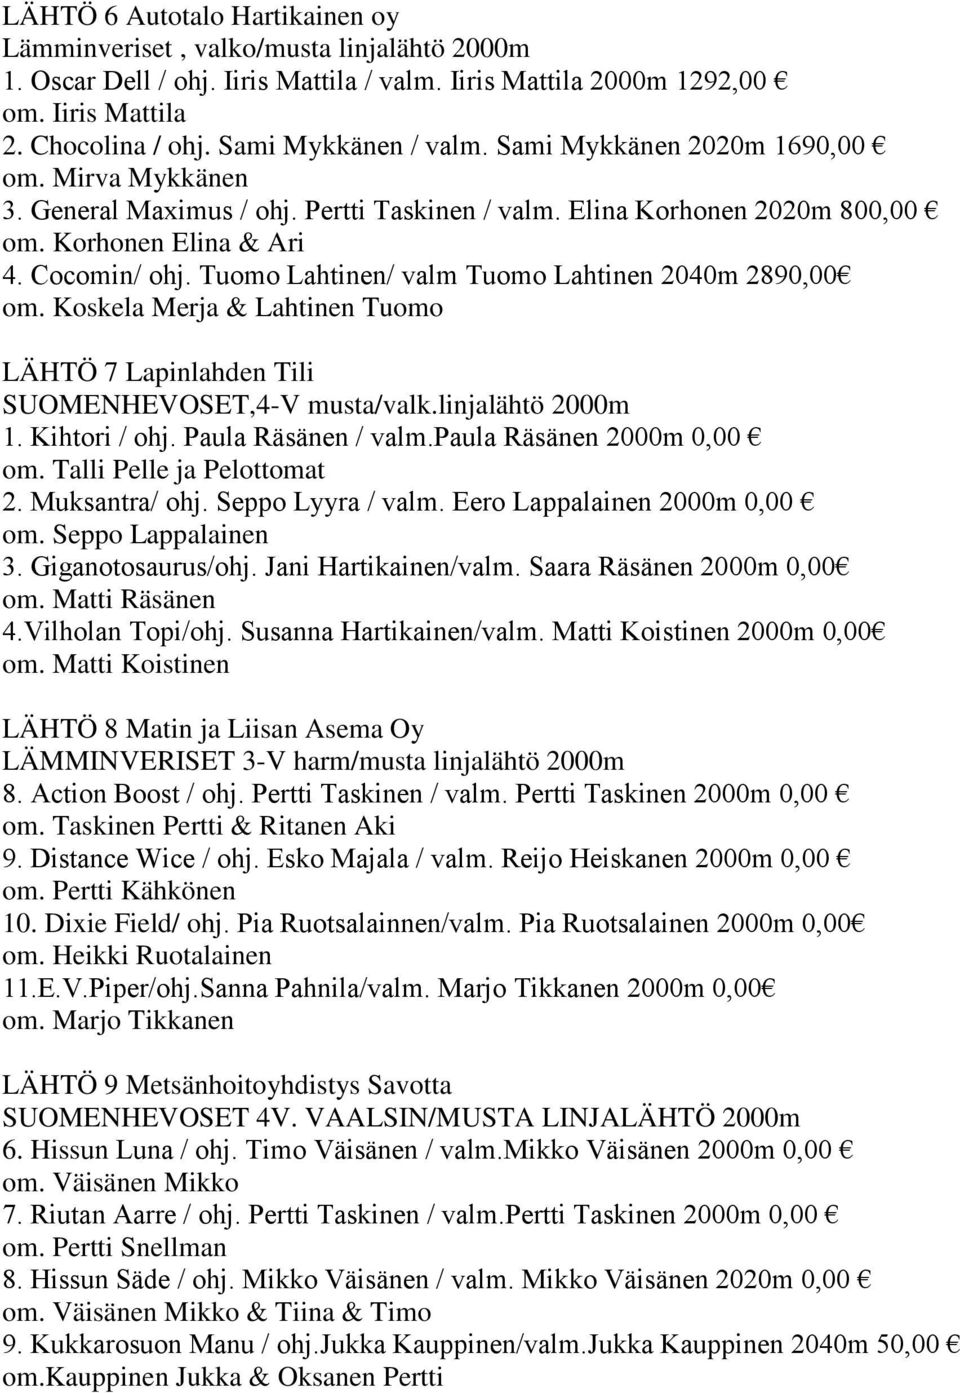 Tuomo Lahtinen/ valm Tuomo Lahtinen 2040m 2890,00 om. Koskela Merja & Lahtinen Tuomo LÄHTÖ 7 Lapinlahden Tili SUOMENHEVOSET,4-V musta/valk.linjalähtö 2000m 1. Kihtori / ohj. Paula Räsänen / valm.